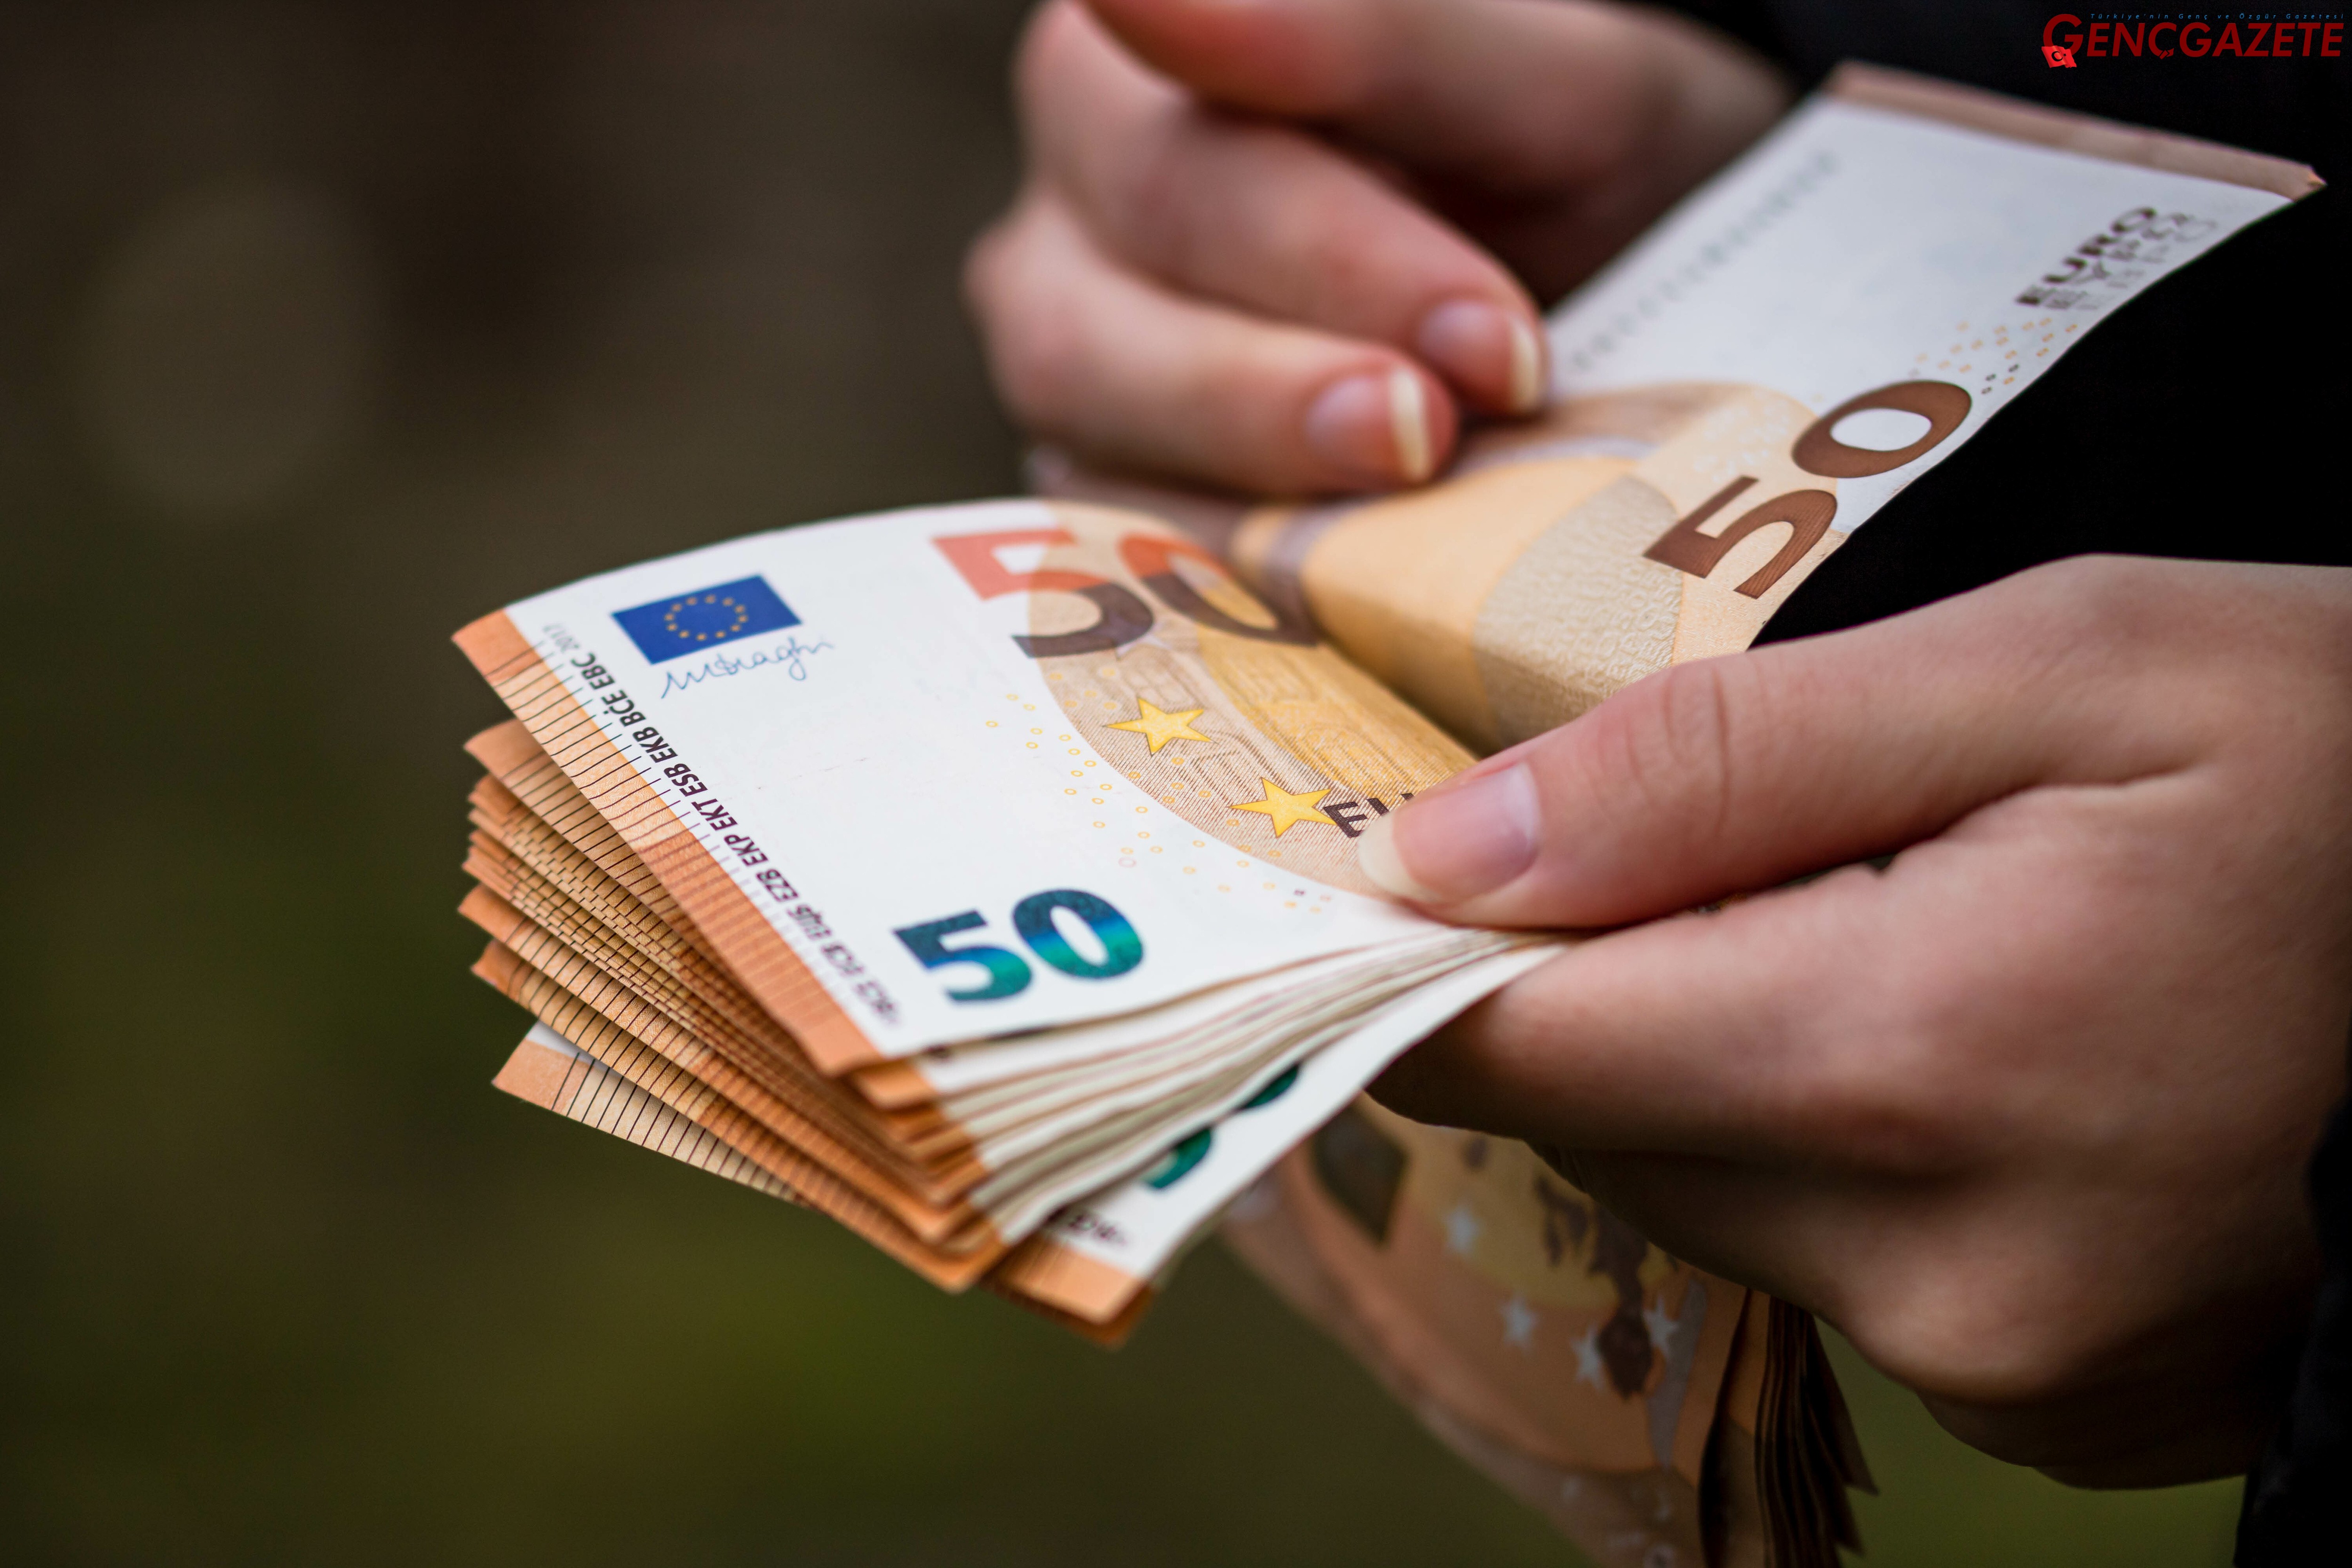 Genç Gazete Euro Avı Başladı! Türkiye Genelinde 'Para Dedektifleri' Heyecanı Sardı (1)